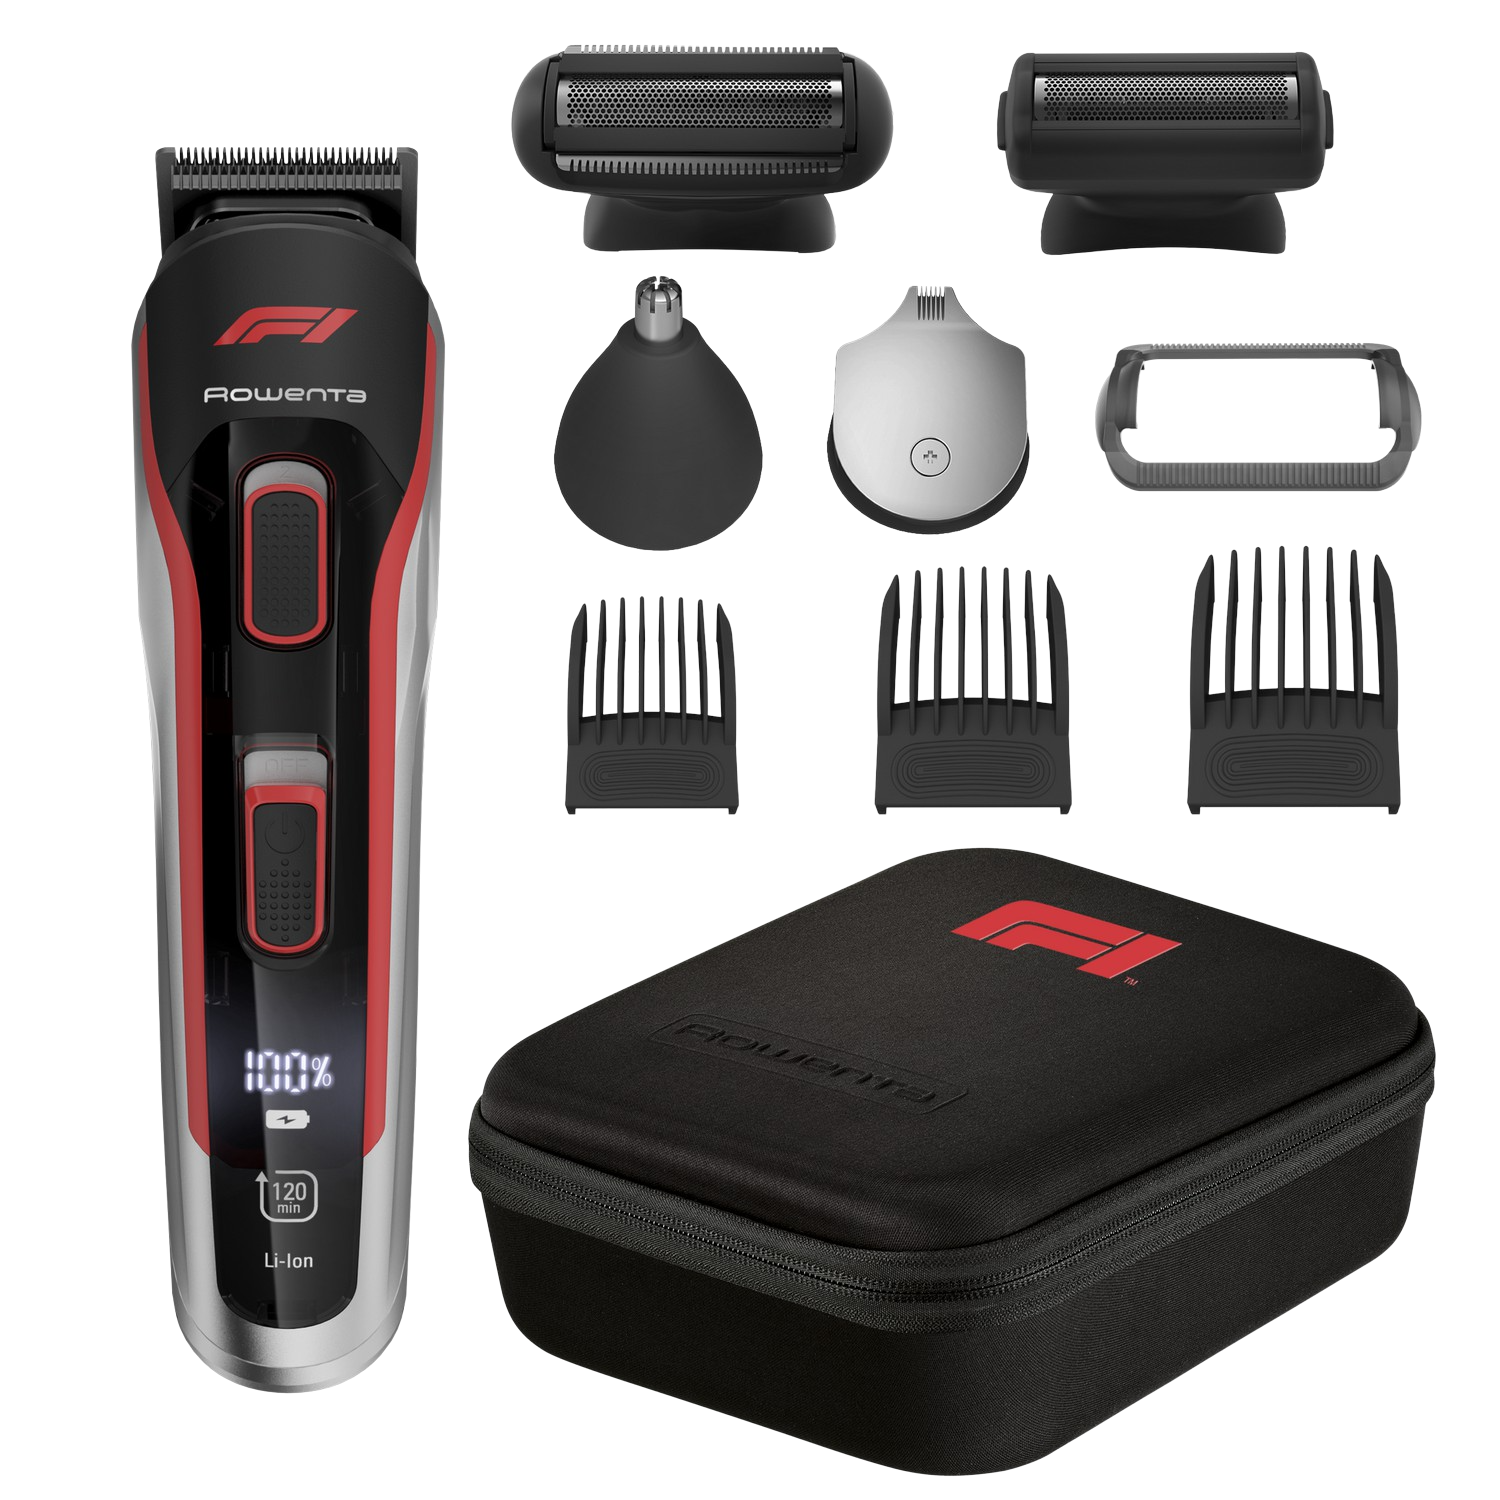 Afeitadora corporal - Rowenta Formula 1® TN944MF0, 10 en 1, 120 min,32 ajustes, Resistente al agua, Revestimiento titanio, Negro y Rojo